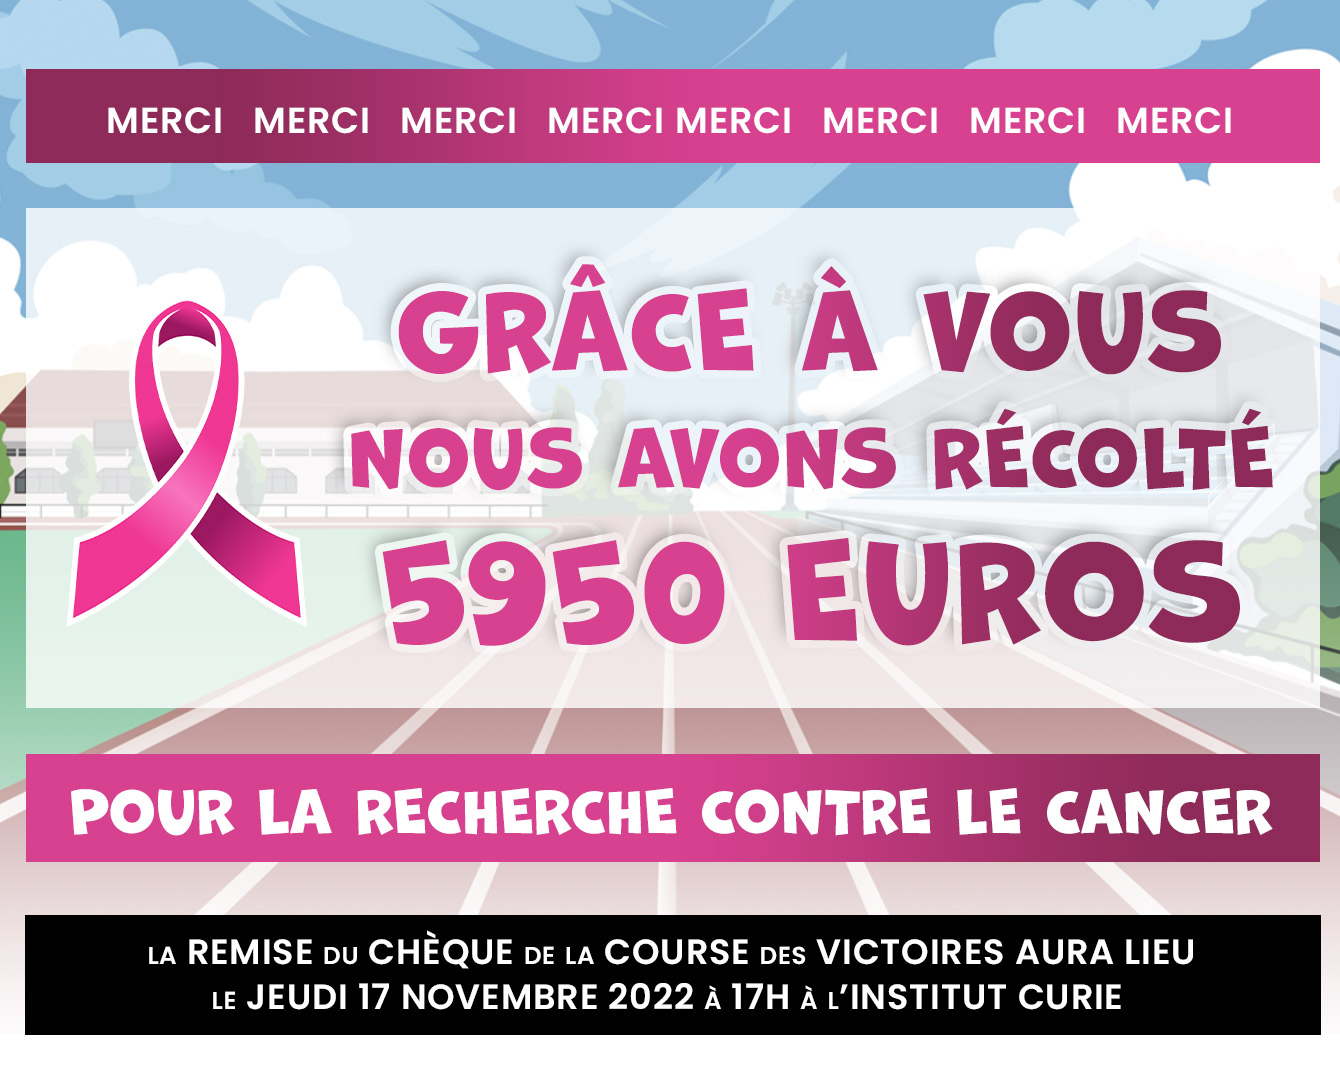 Grâce à vous nous avons récolté 5950 euros pour la recherche contre le cancer